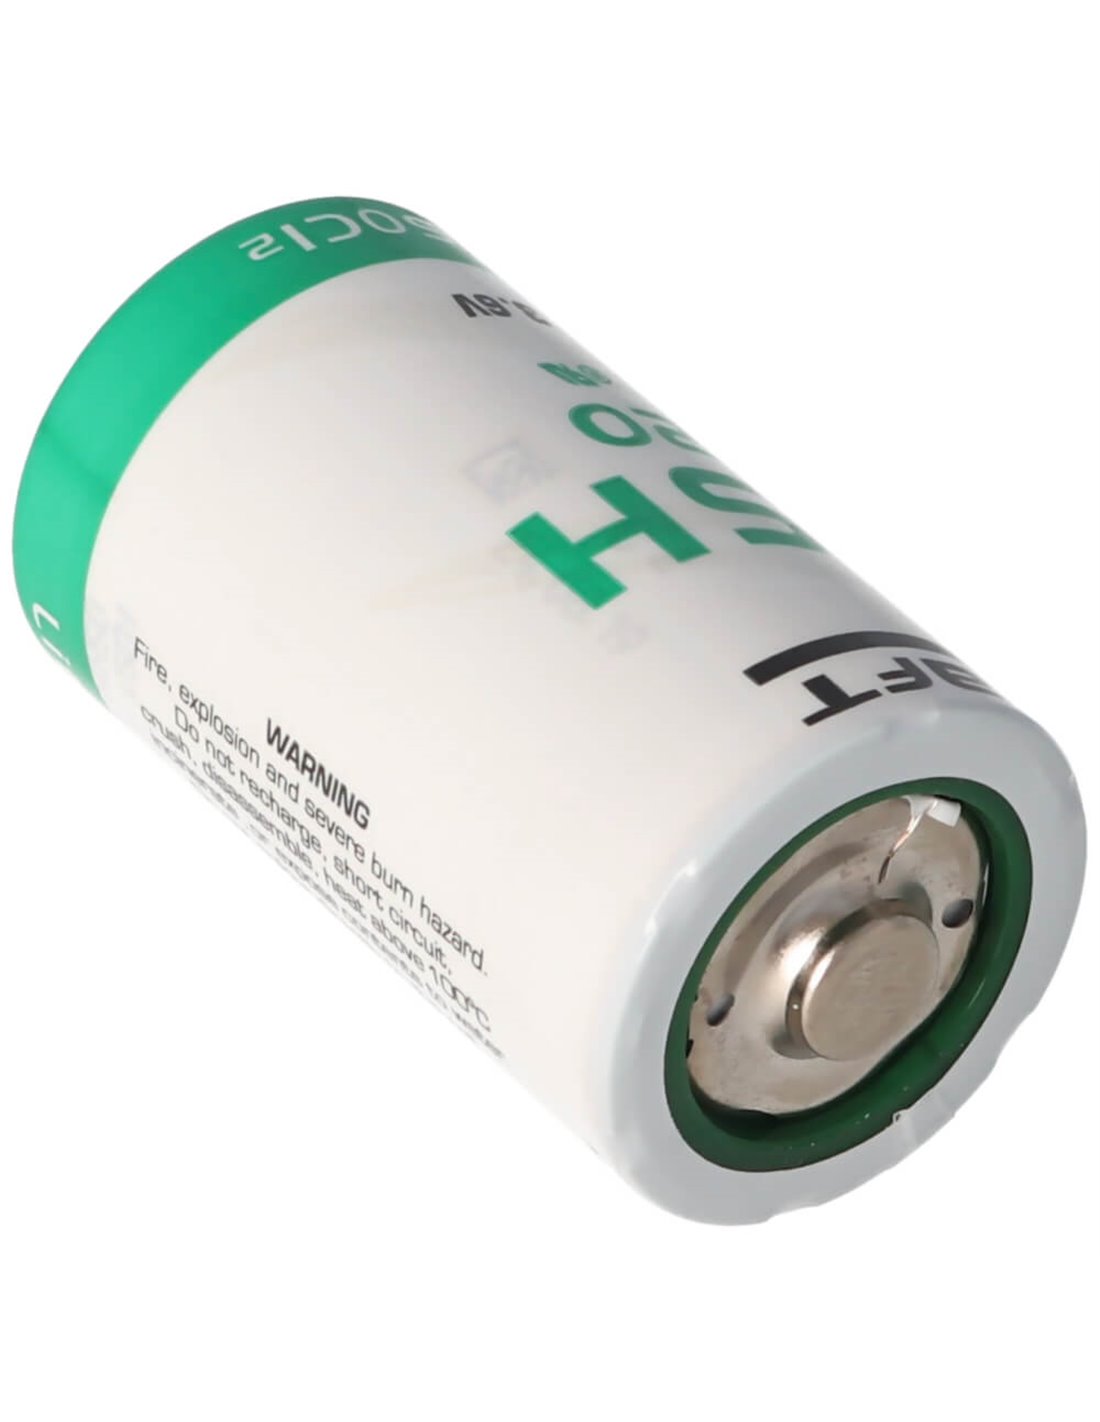 Saft lsh20,D size battery 3.6V, 13000mah